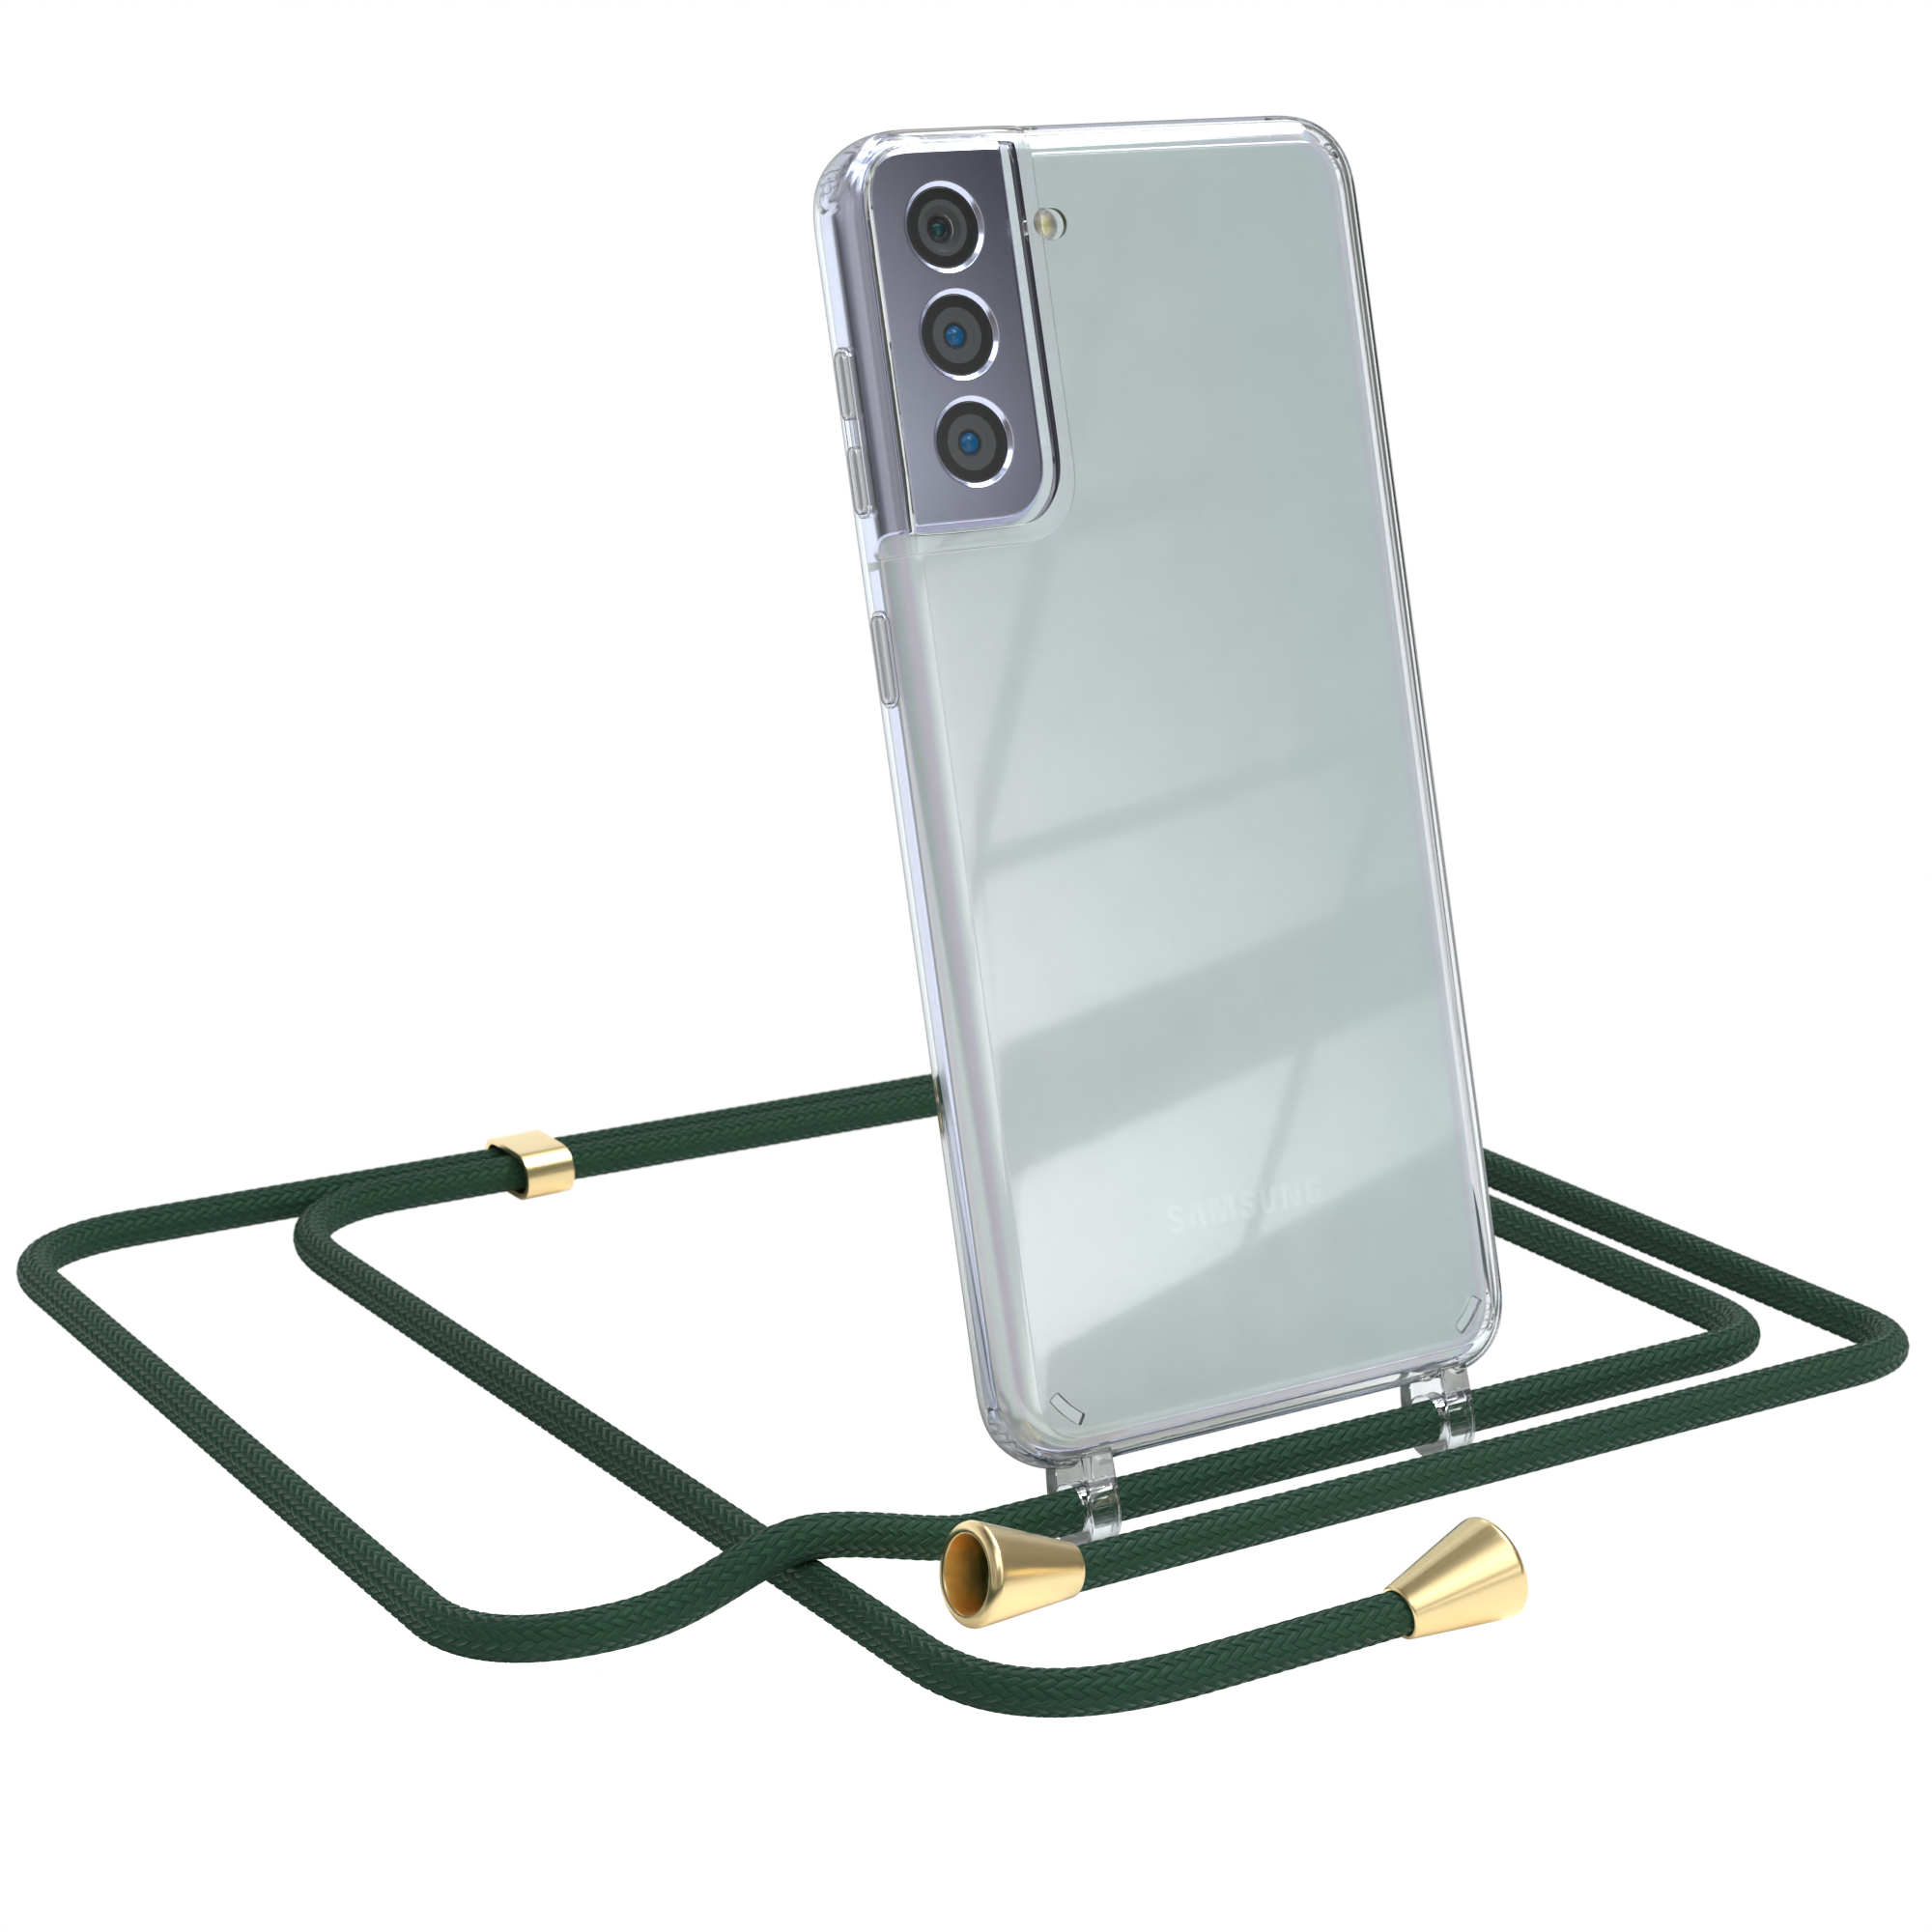 EAZY CASE Clear Cover mit Samsung, Galaxy Clips / Umhängeband, Umhängetasche, Plus Gold S21 Grün 5G